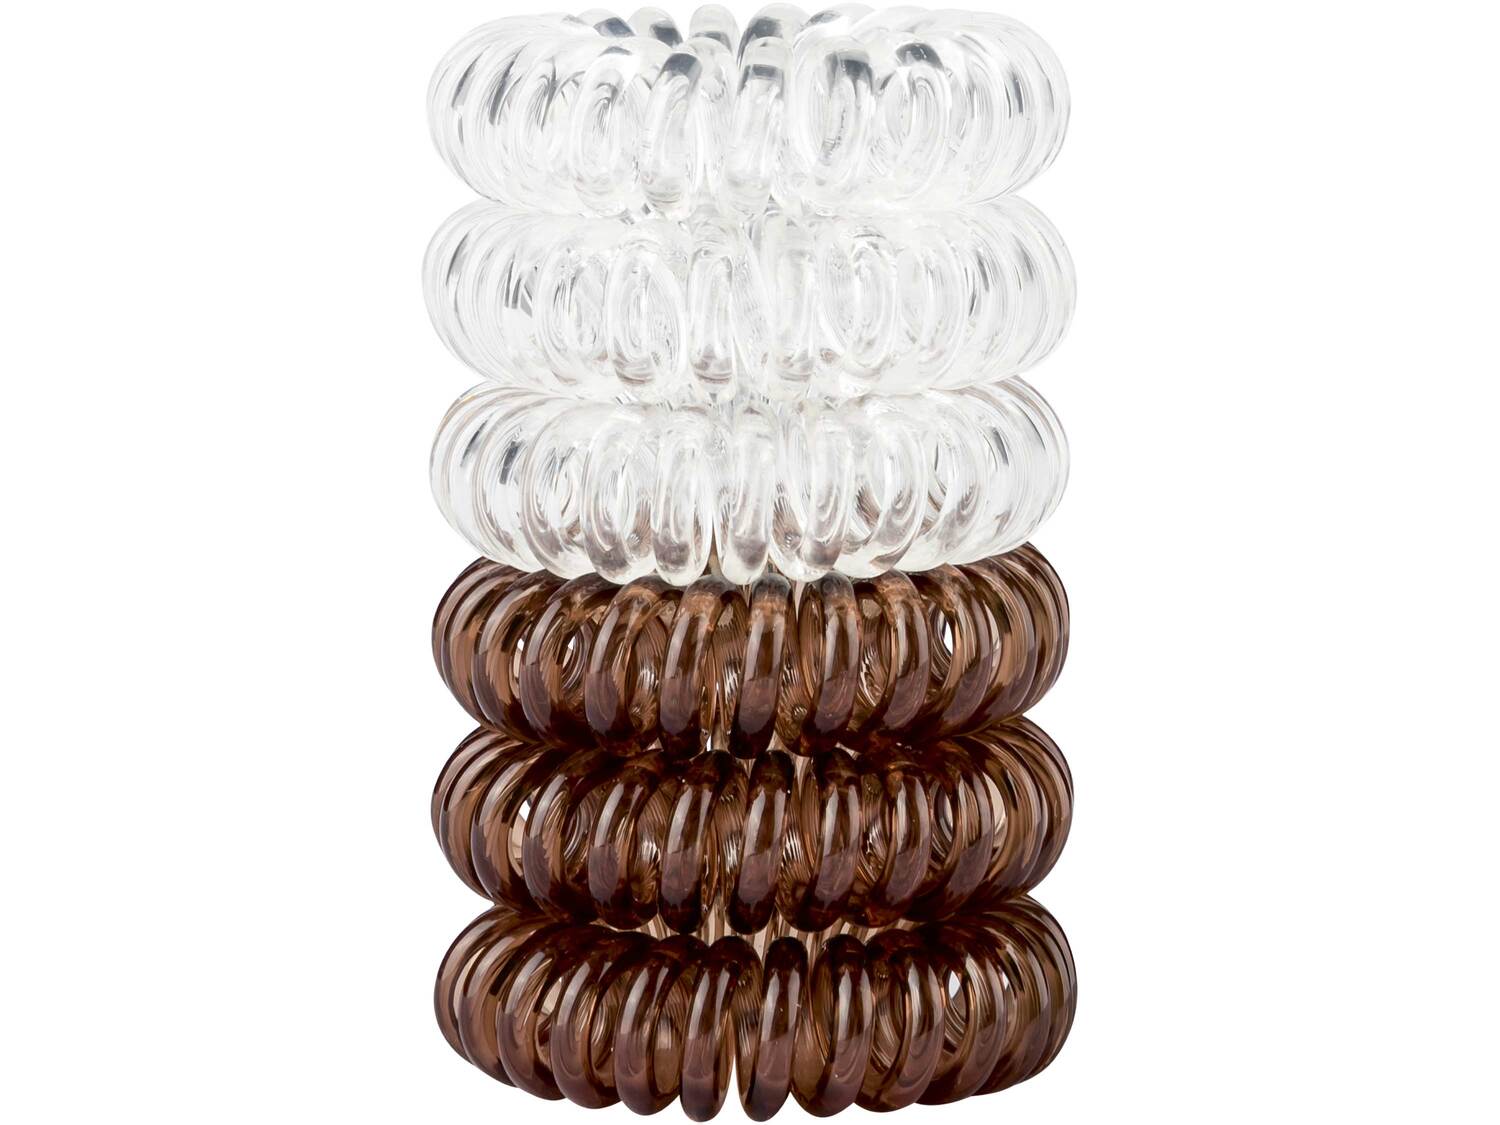 Spiralne gumki do włosów Esmara, cena 5,99 PLN 
6 zestawów do wyboru 
- delikatne ...